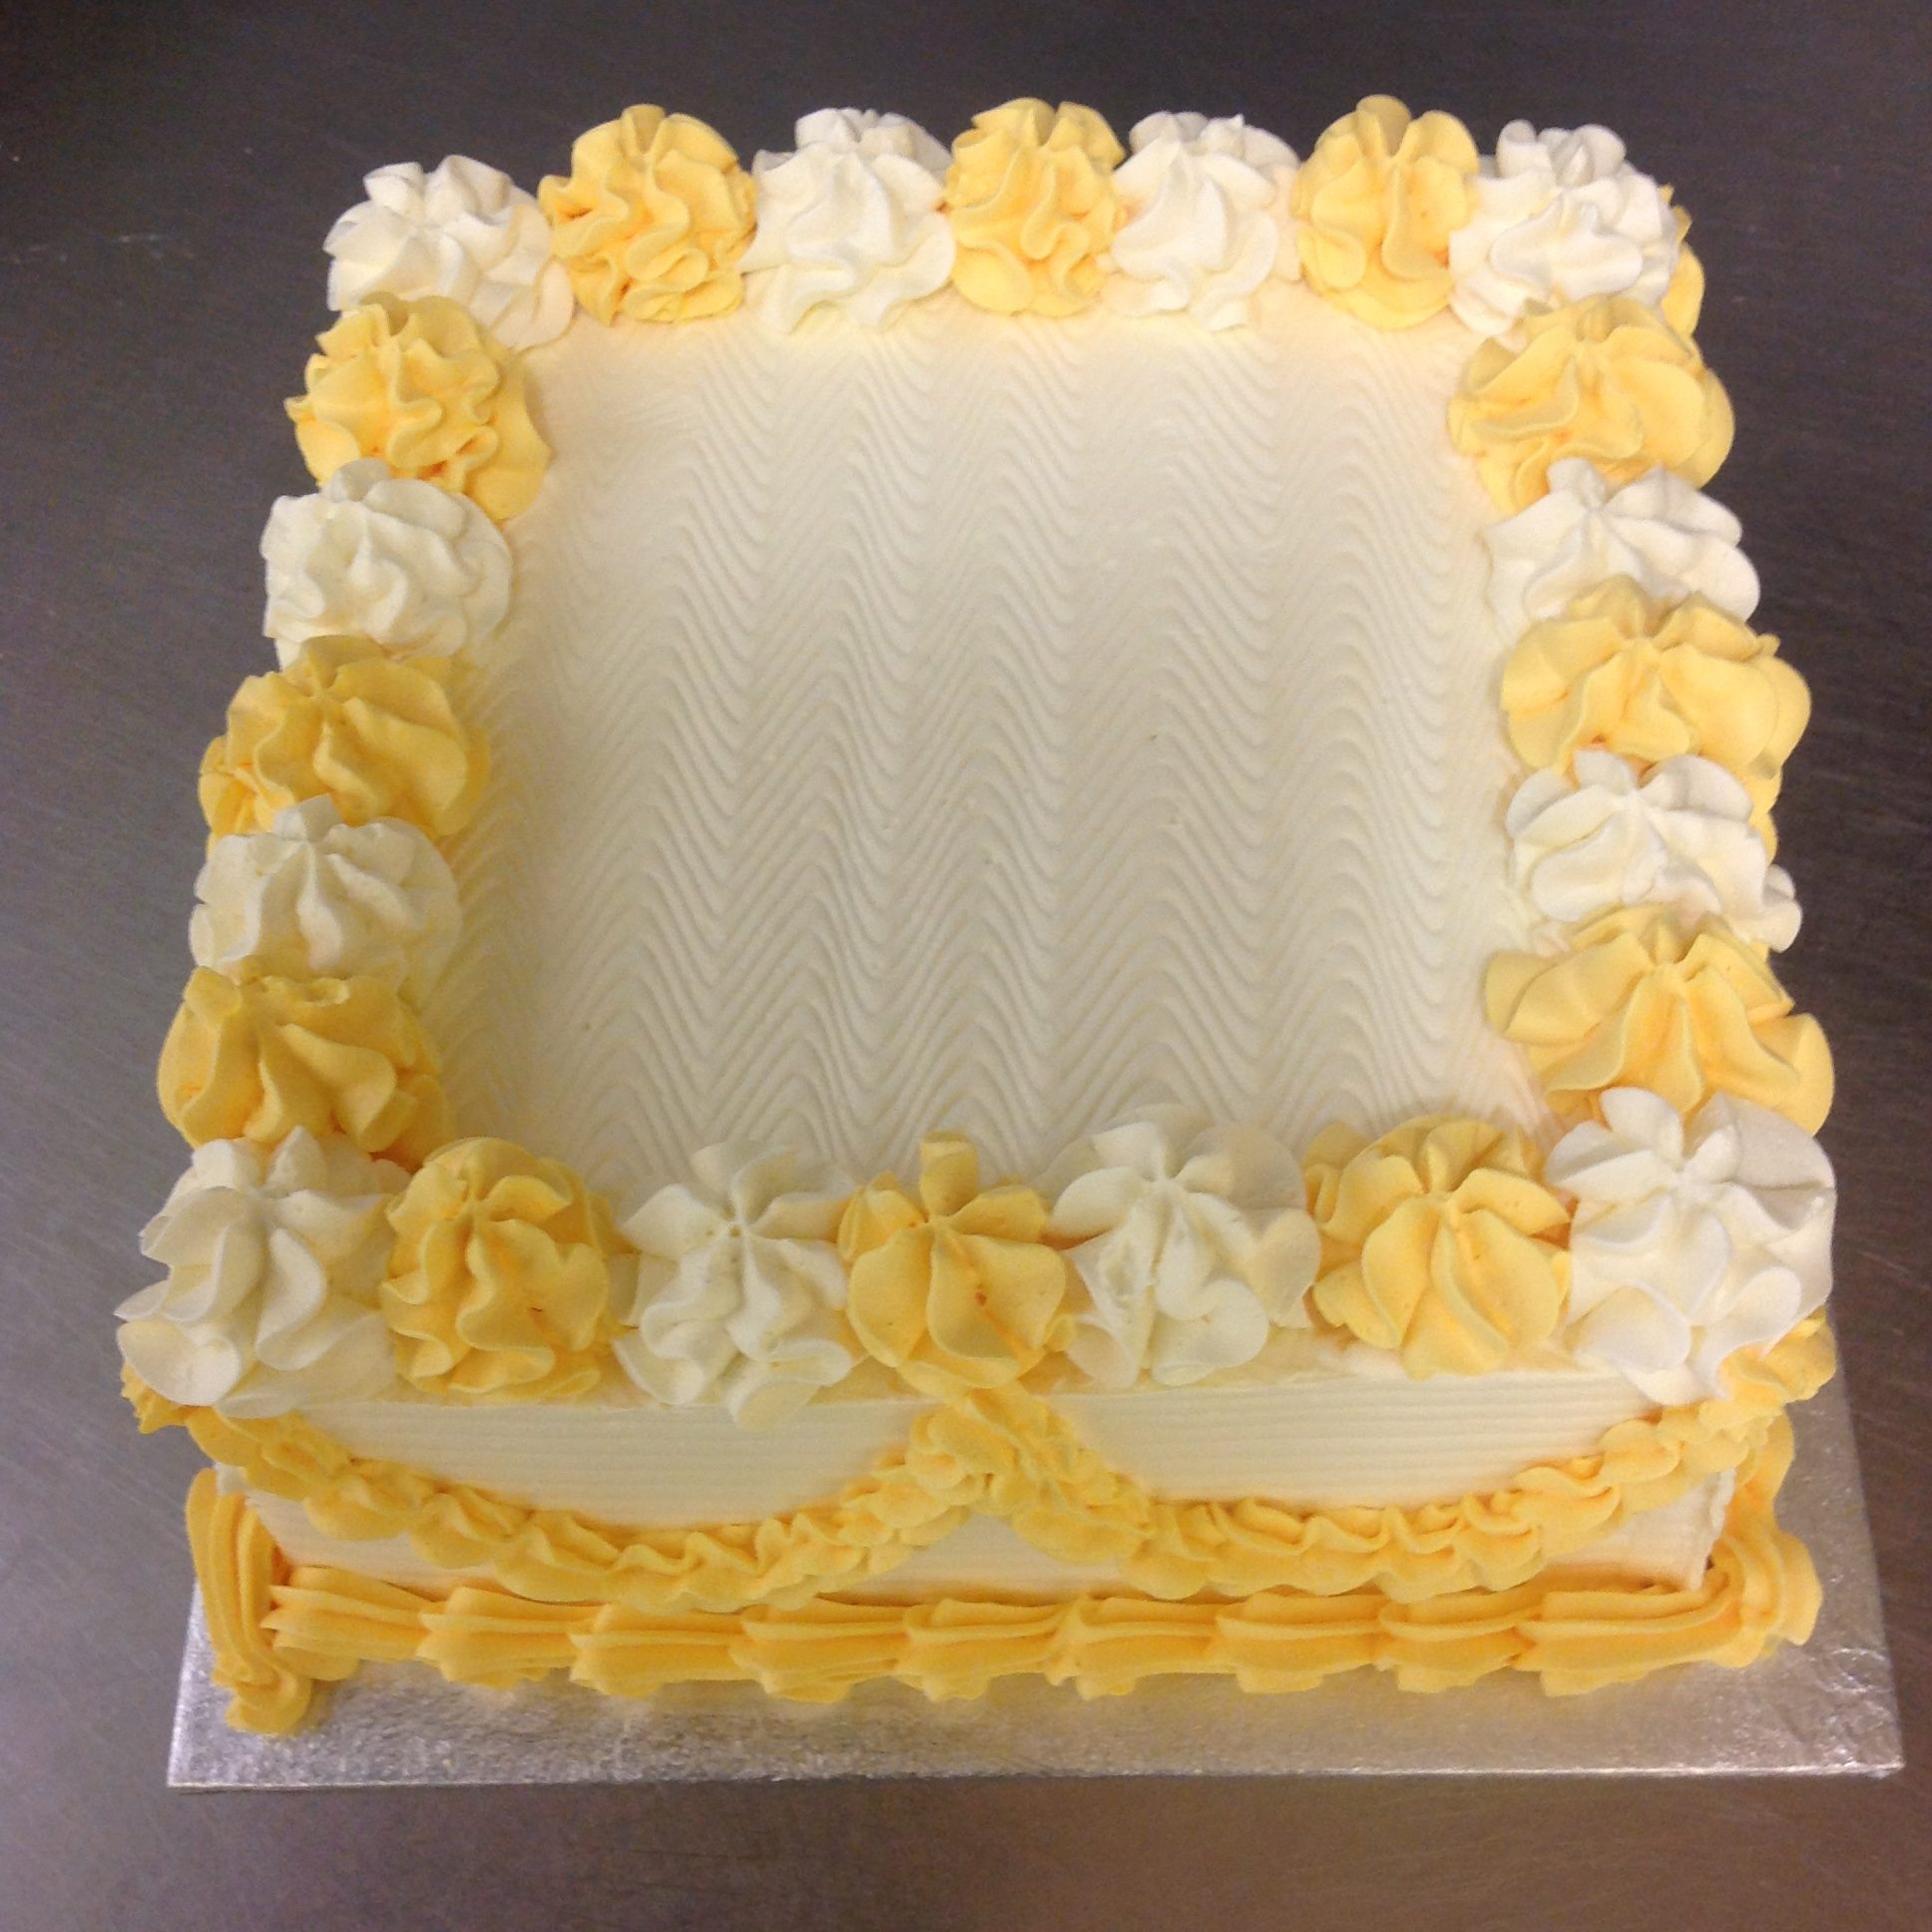 SQ43 – Cake & Cream